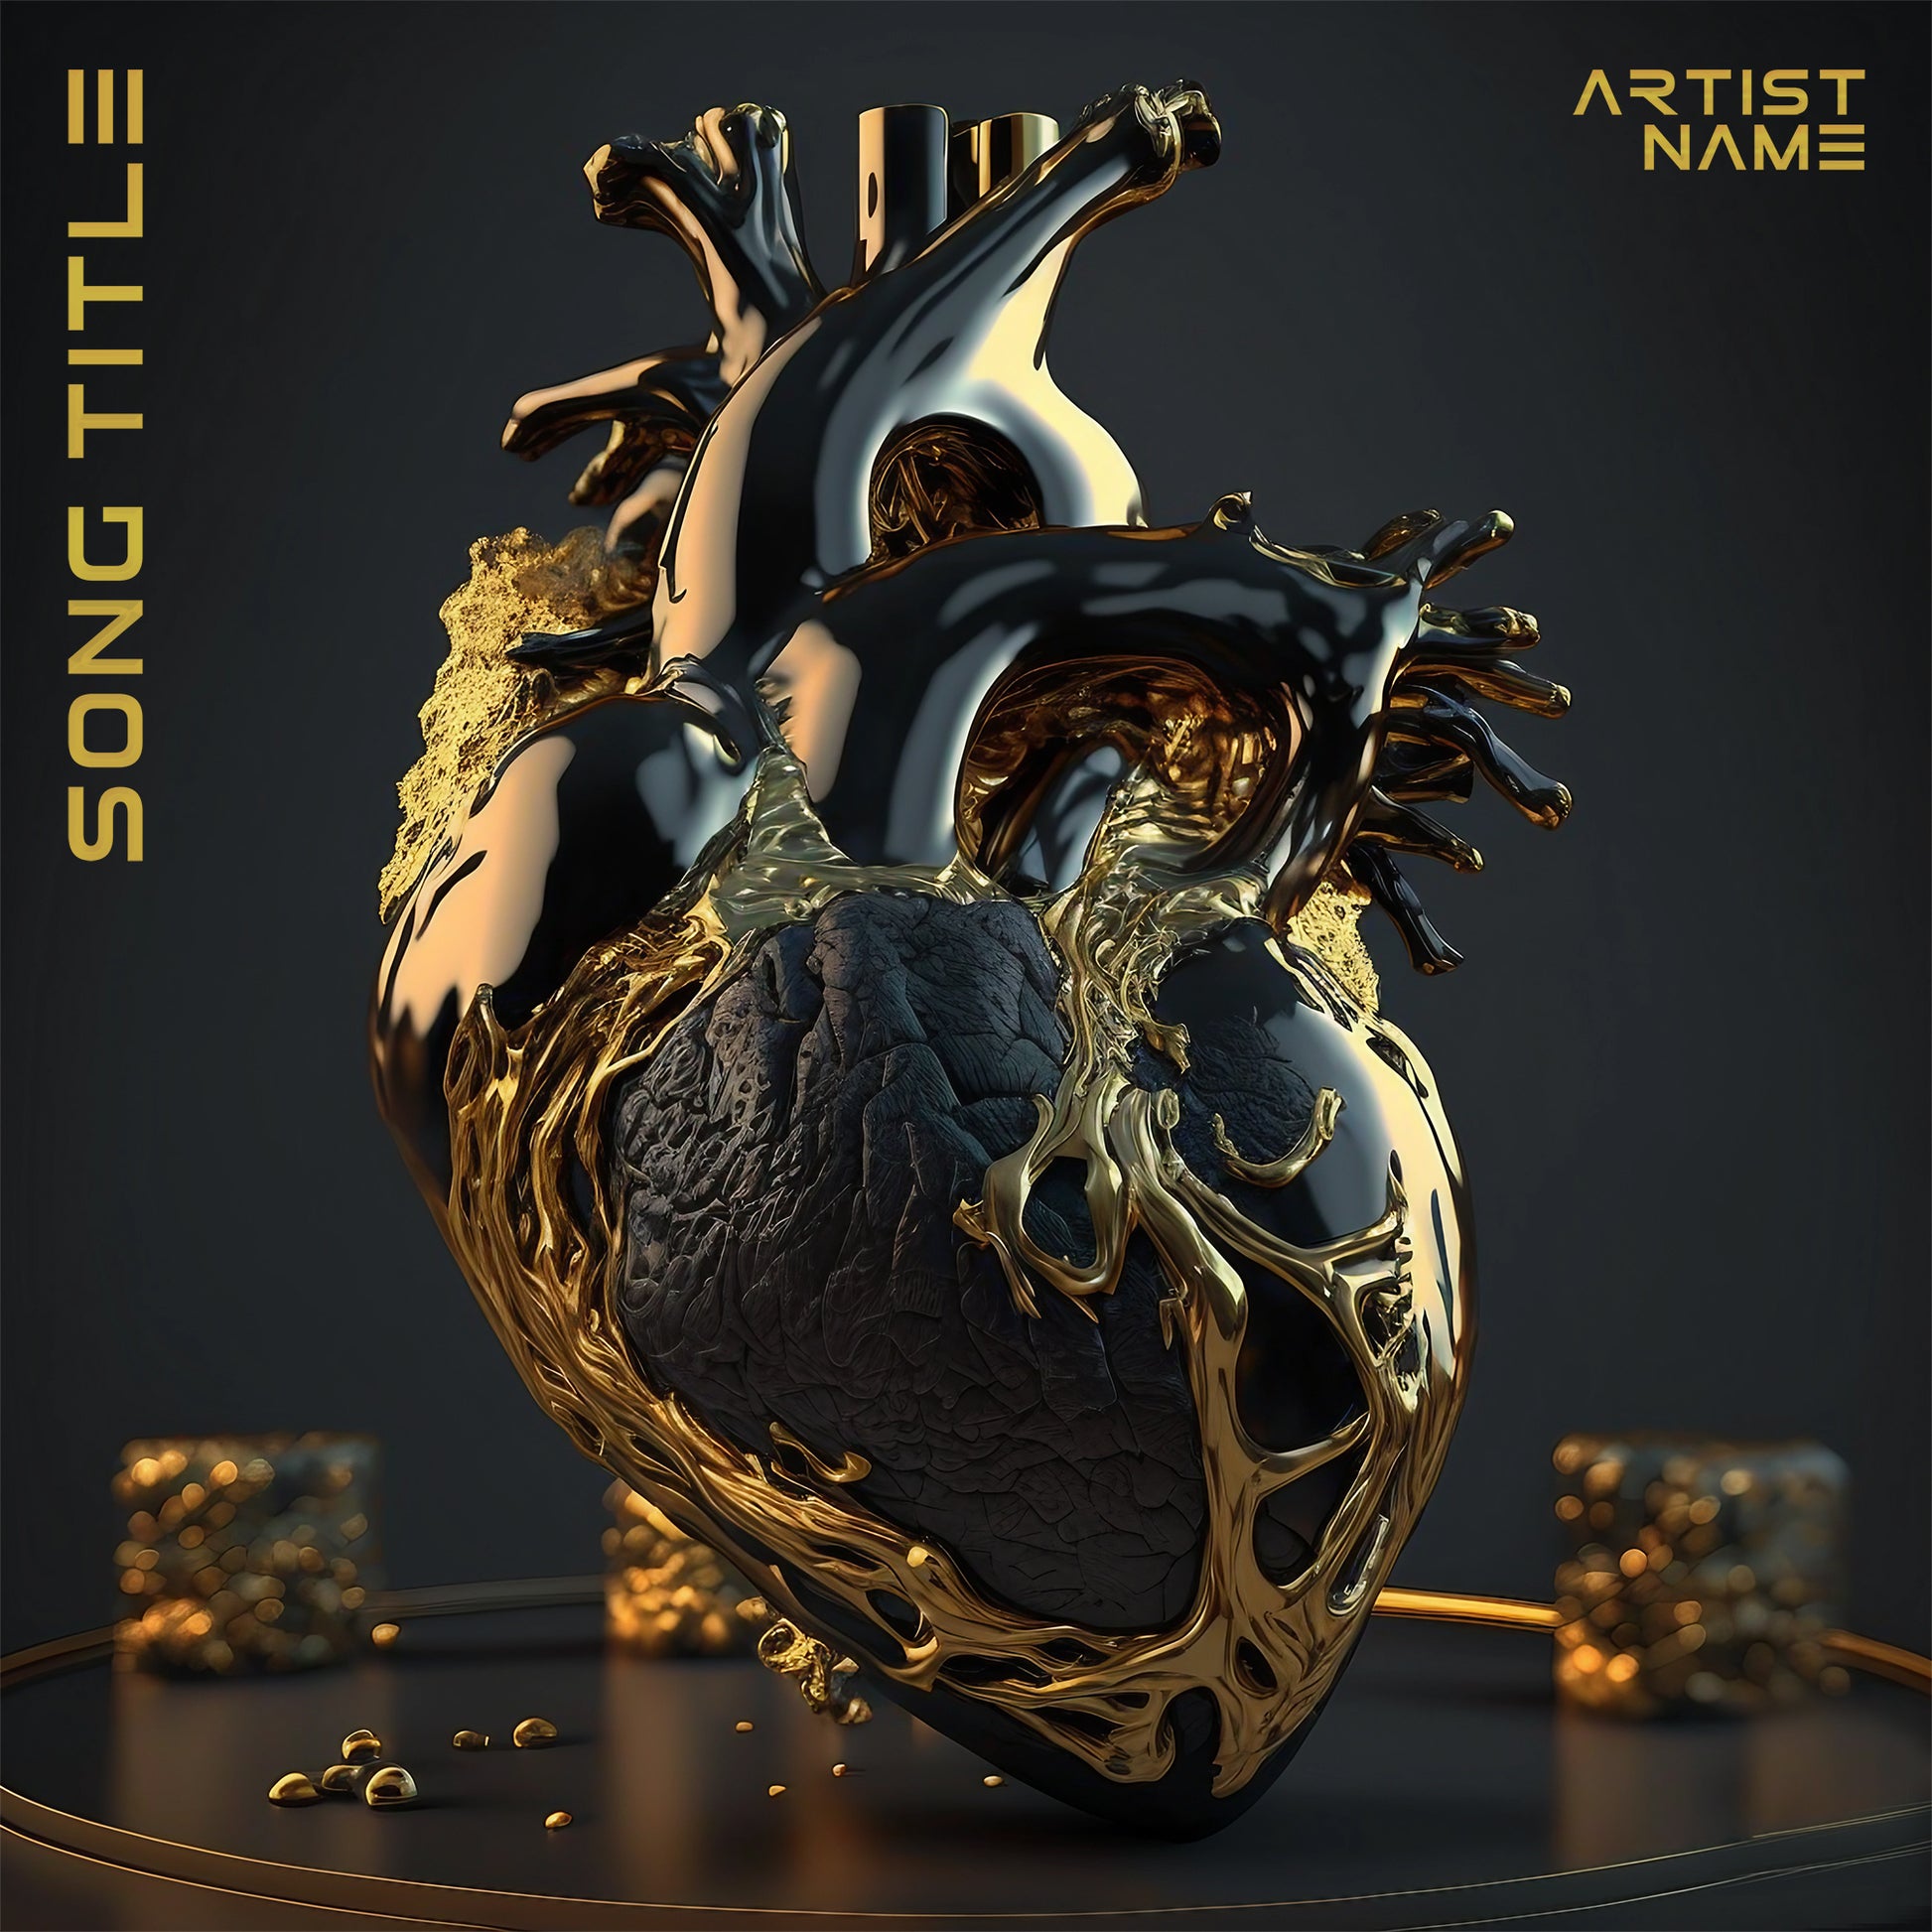 Gold soul golden heart cover art for music